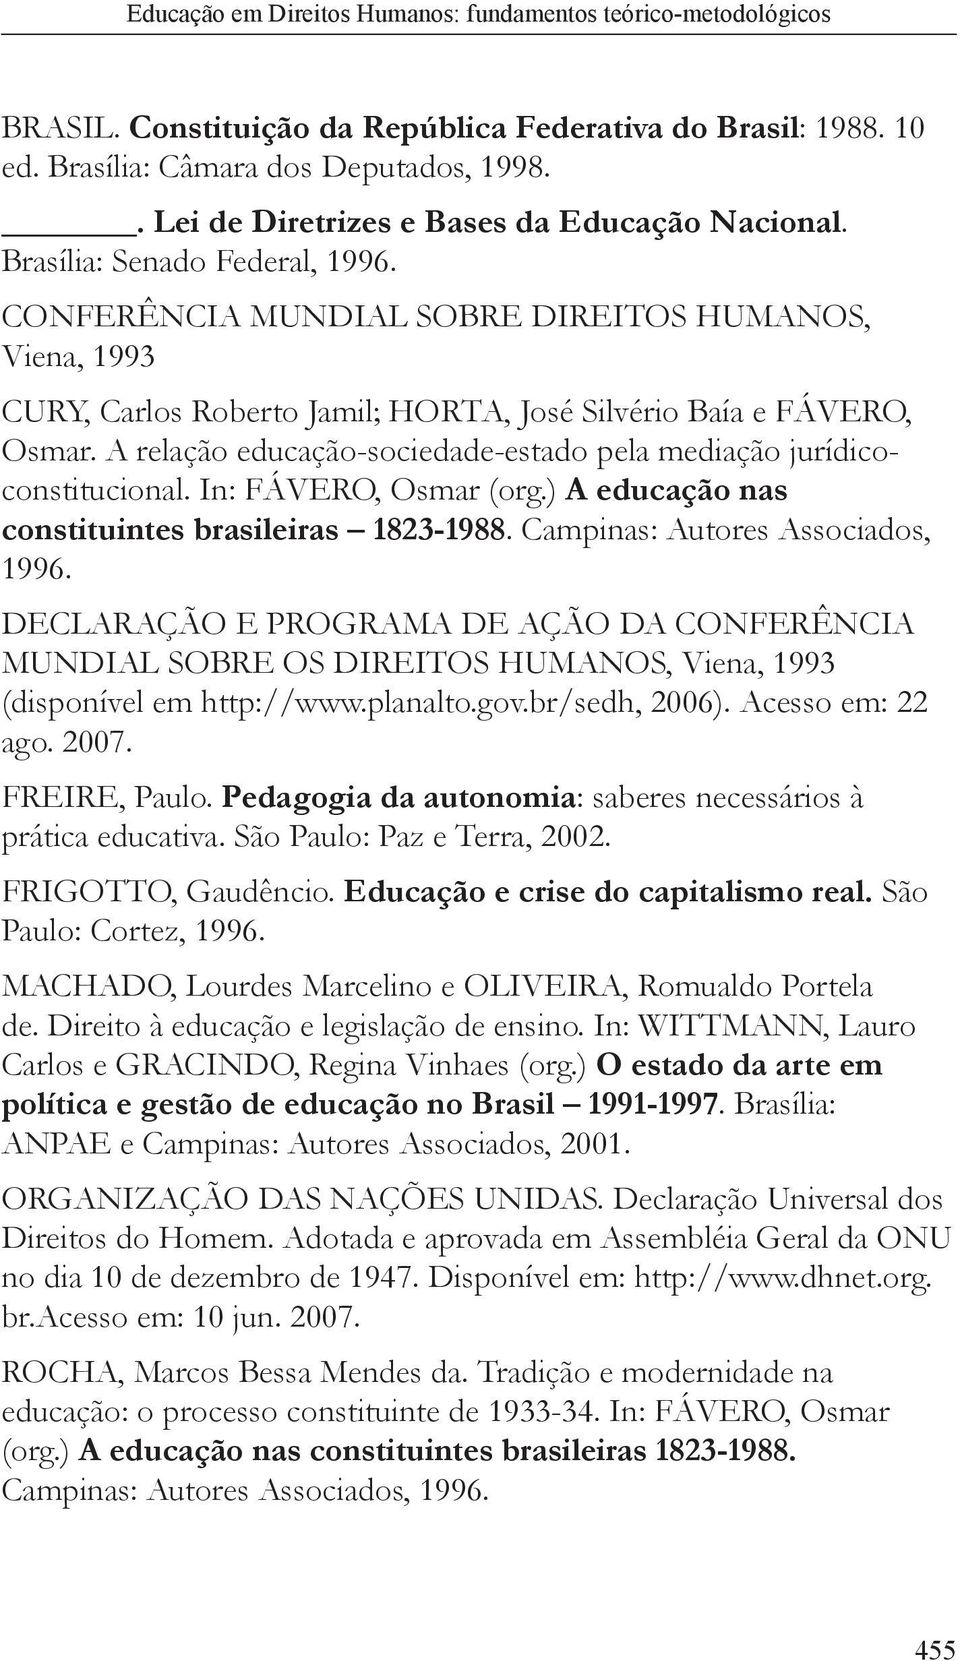 In: FÁVERO, Osmar (org.) A educação nas constituintes brasileiras 1823-1988. Campinas: Autores Associados, 1996.